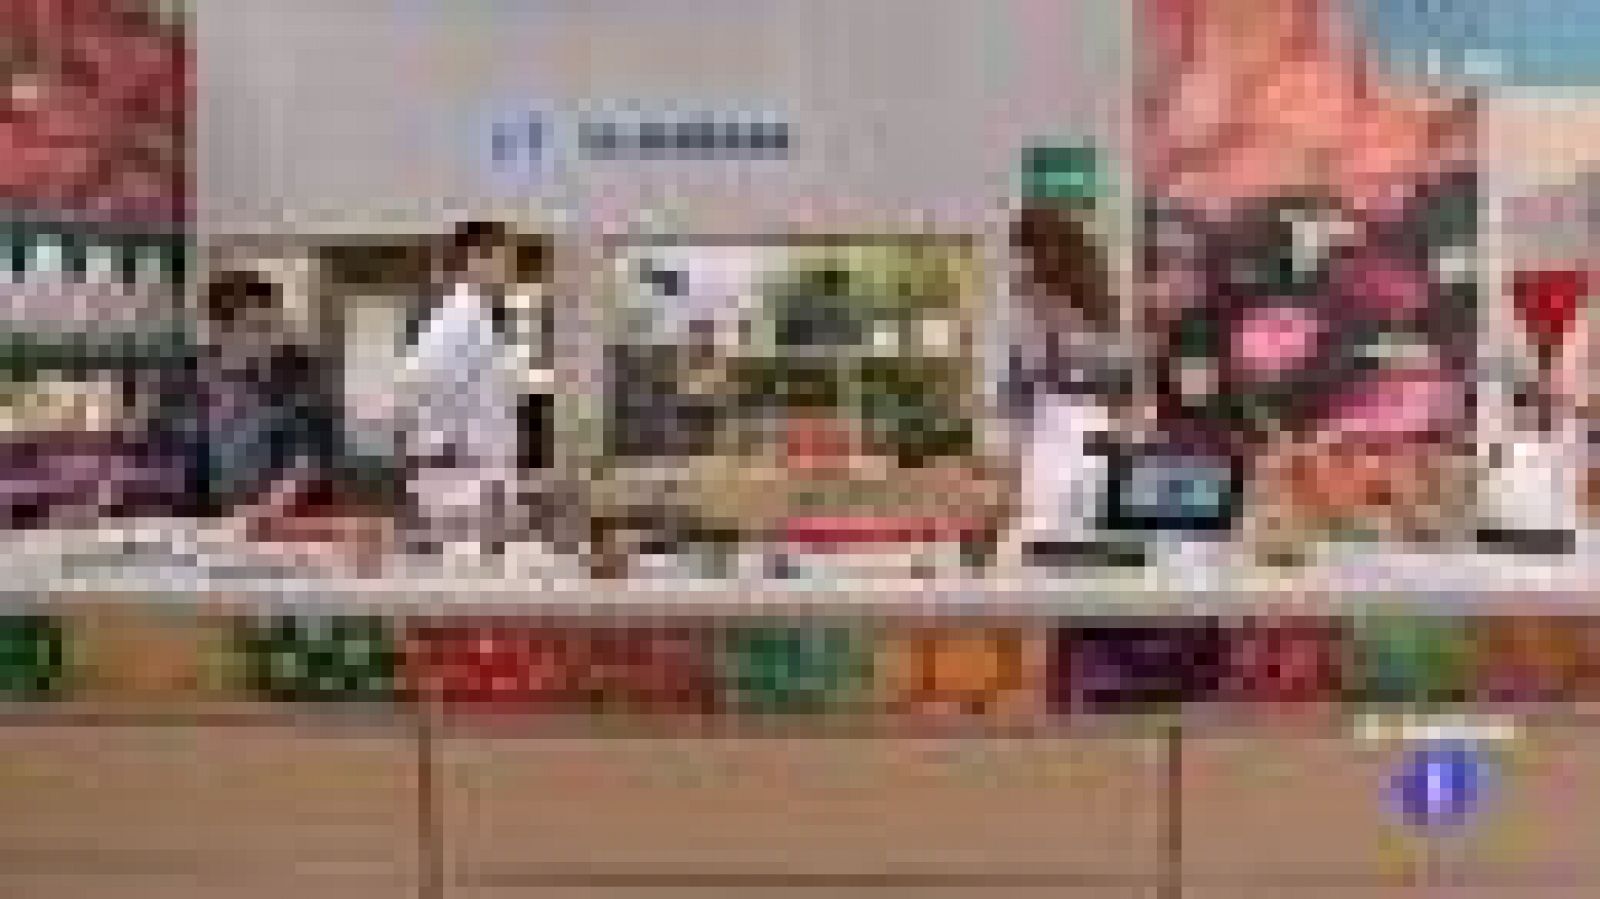  Saber cocinar- Pastel de trucha asalmonada con gambones y espárragos (16/03/2012)